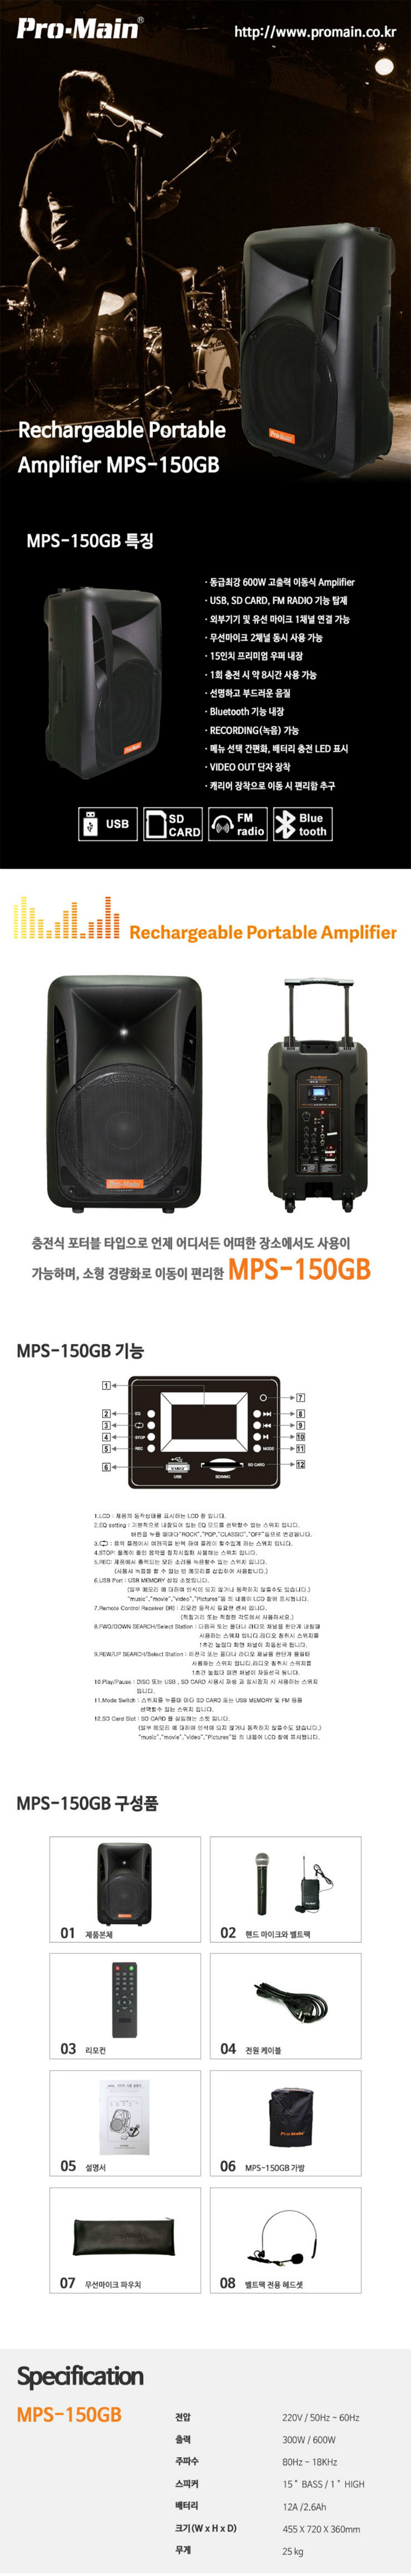 mps-150Gd.jpg